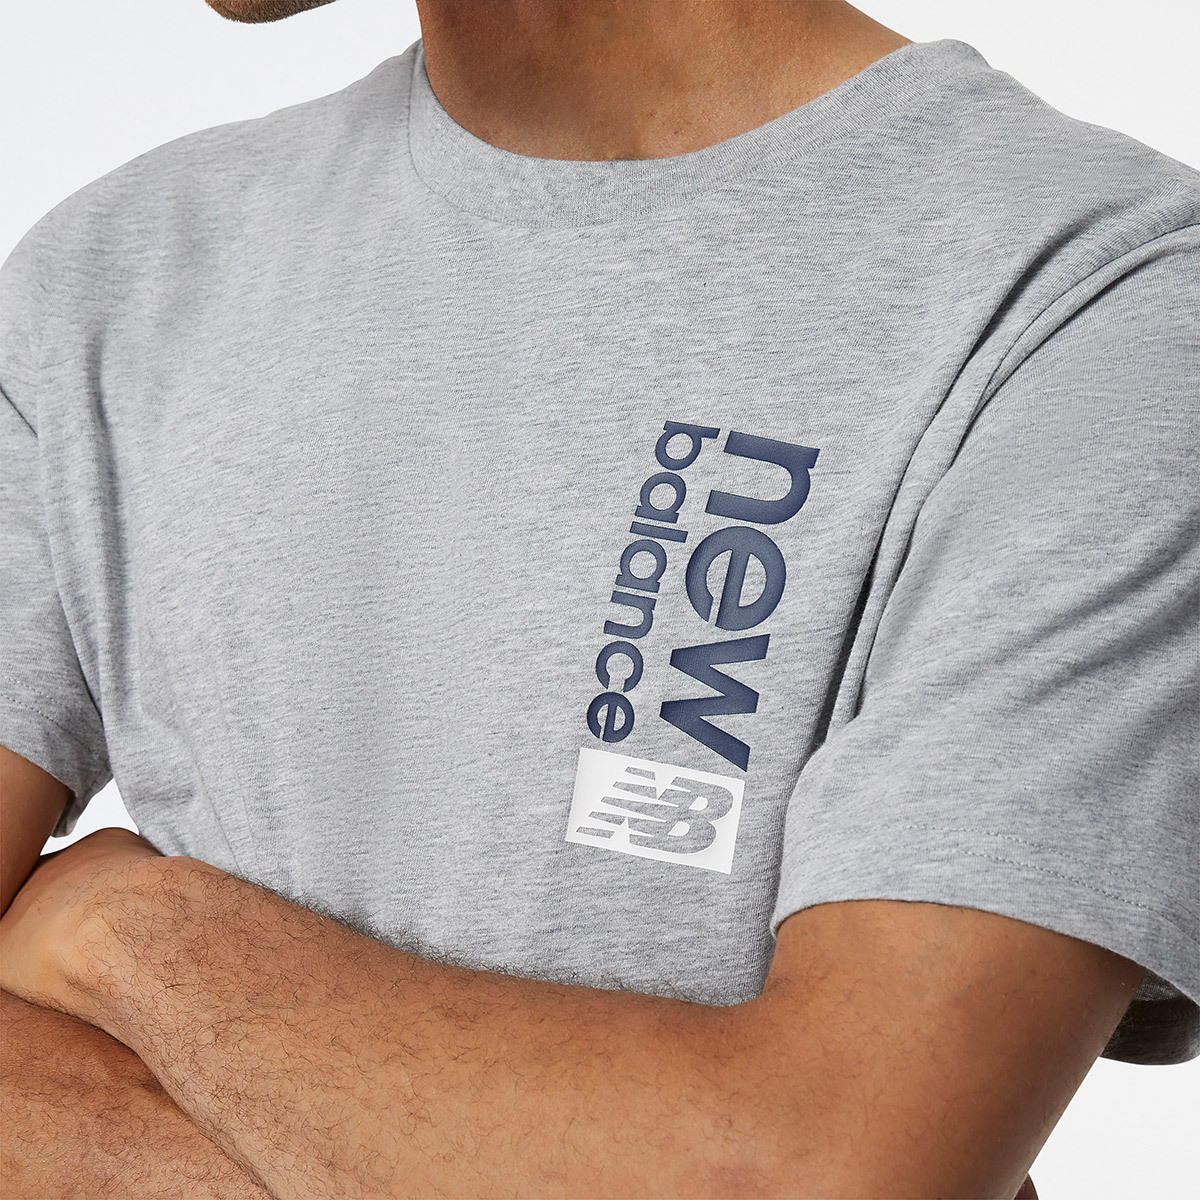 뉴발란스 남성 반소매 티셔츠 - 그레이, XL